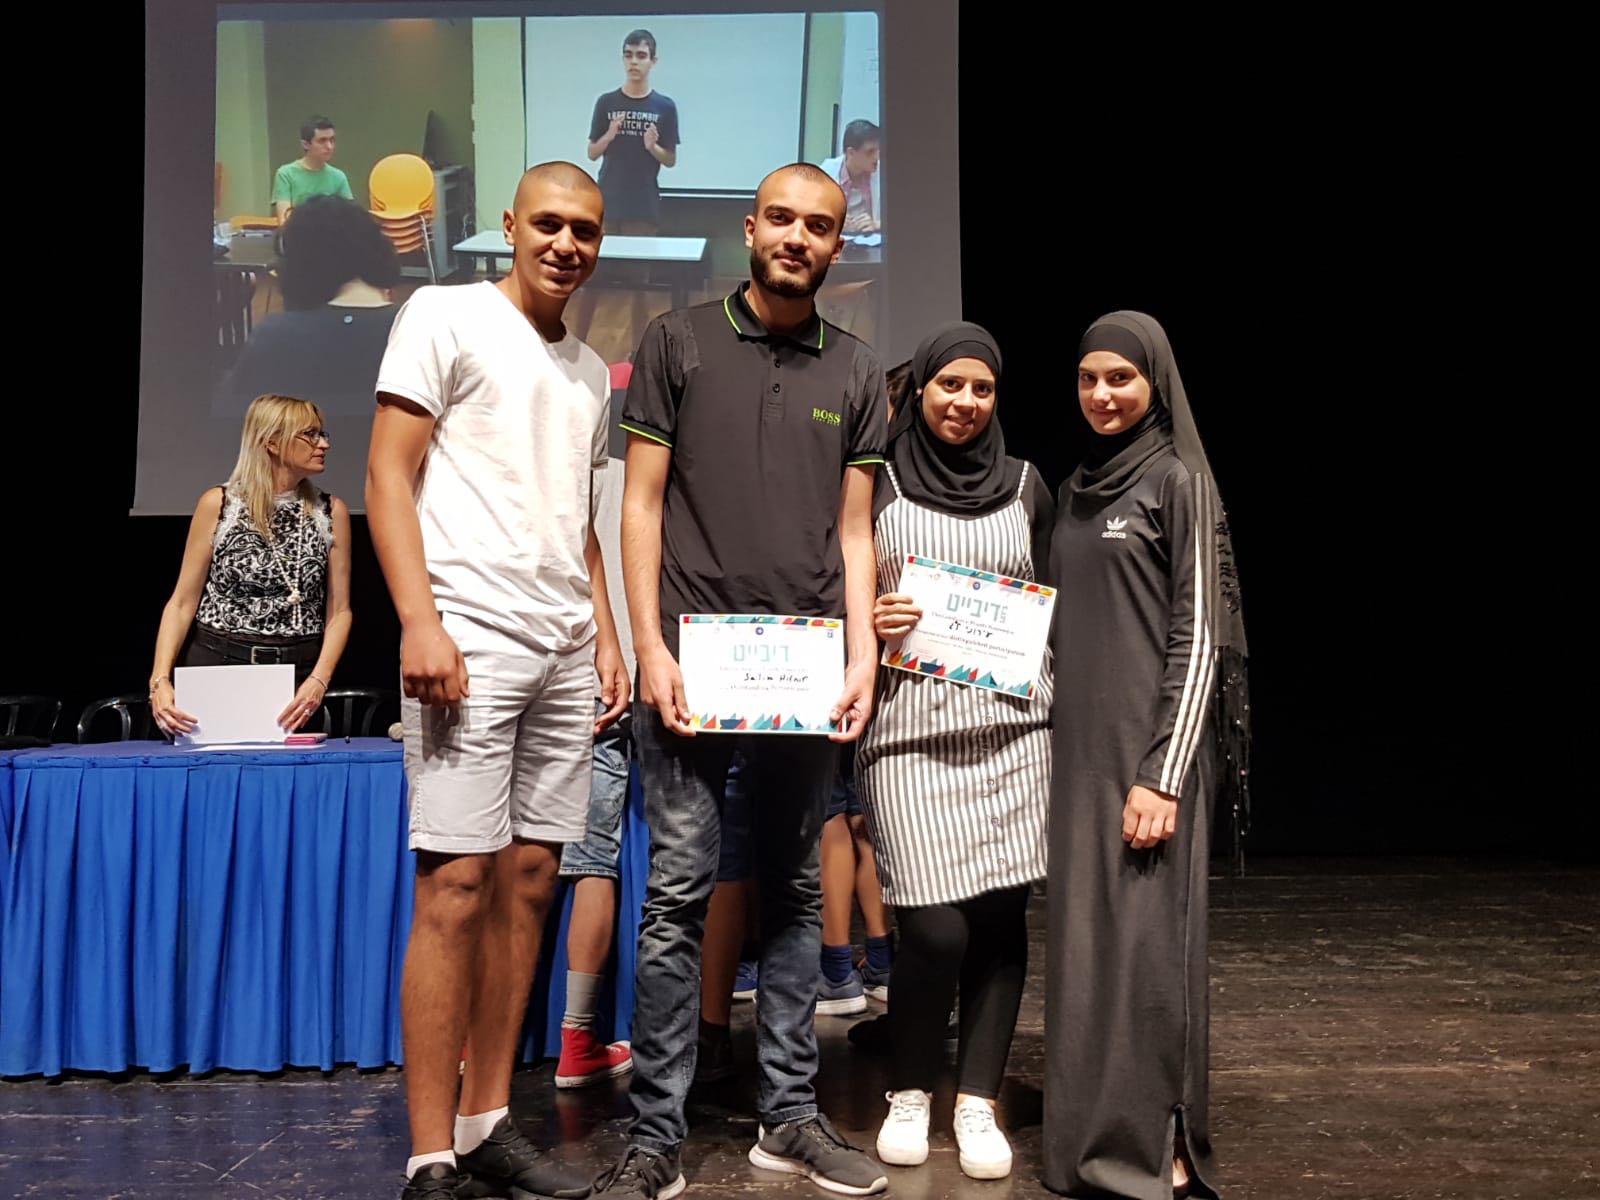 طلاب مدرسة يافا المستقبل يصلون إلى المراحل النهائية في مسابقة فن المناظرة باللغة الإنجليزية